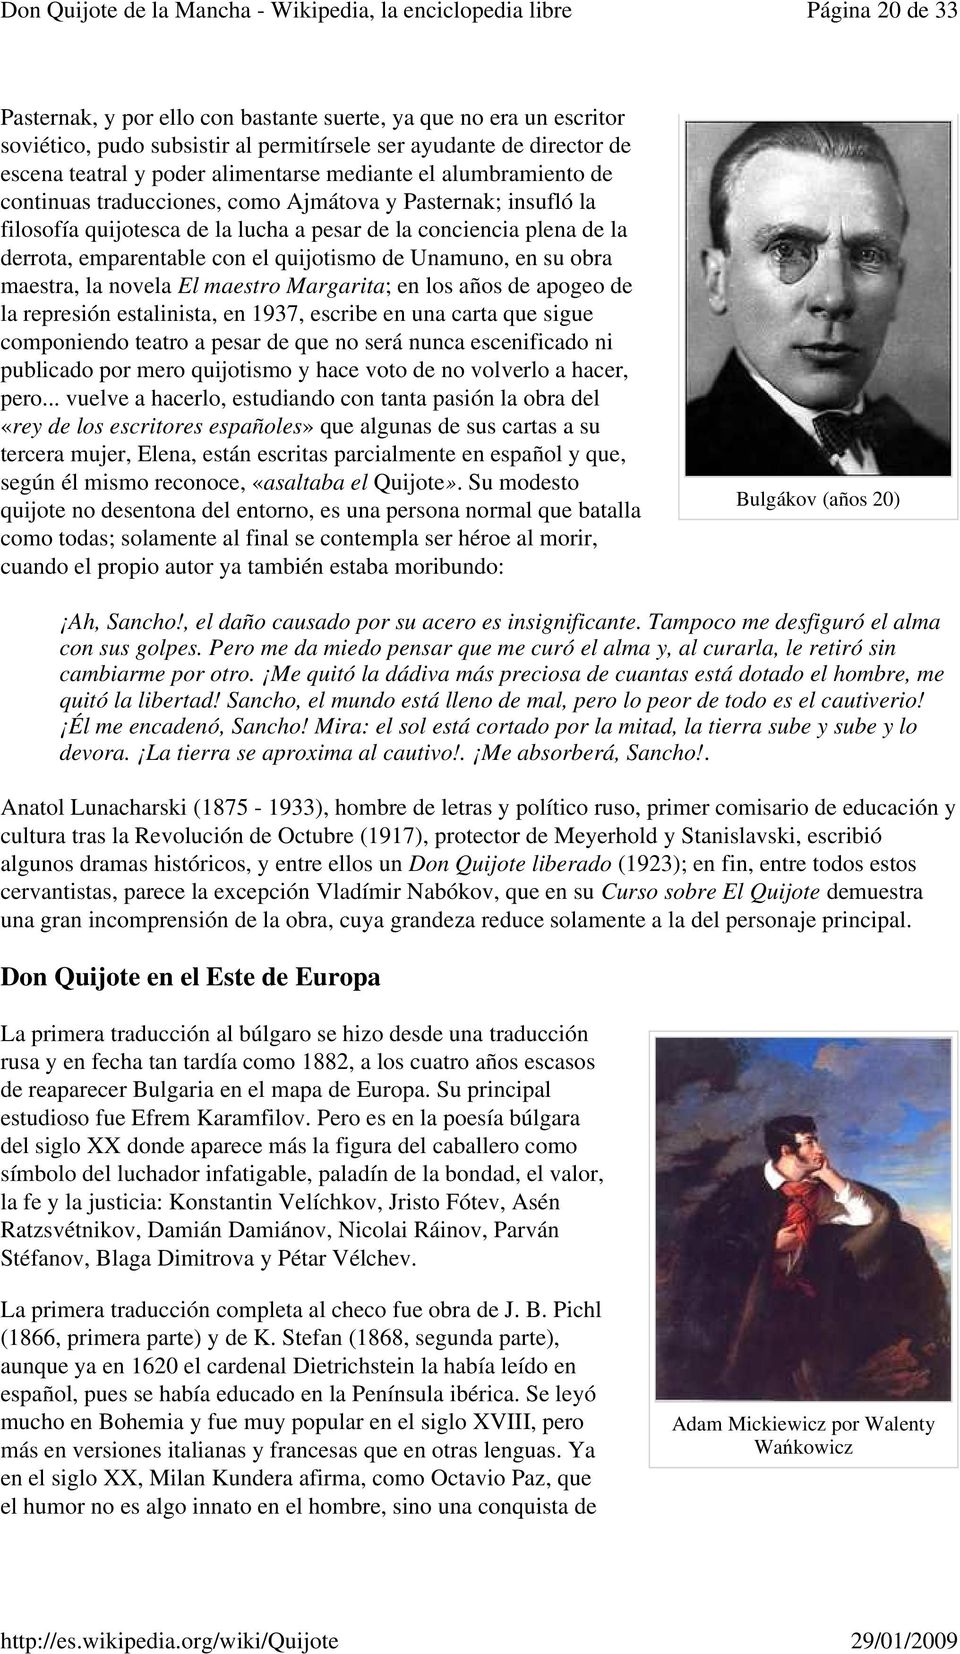 Don Quijote De La Mancha Wikipedia La Enciclopedia Libre Pdf